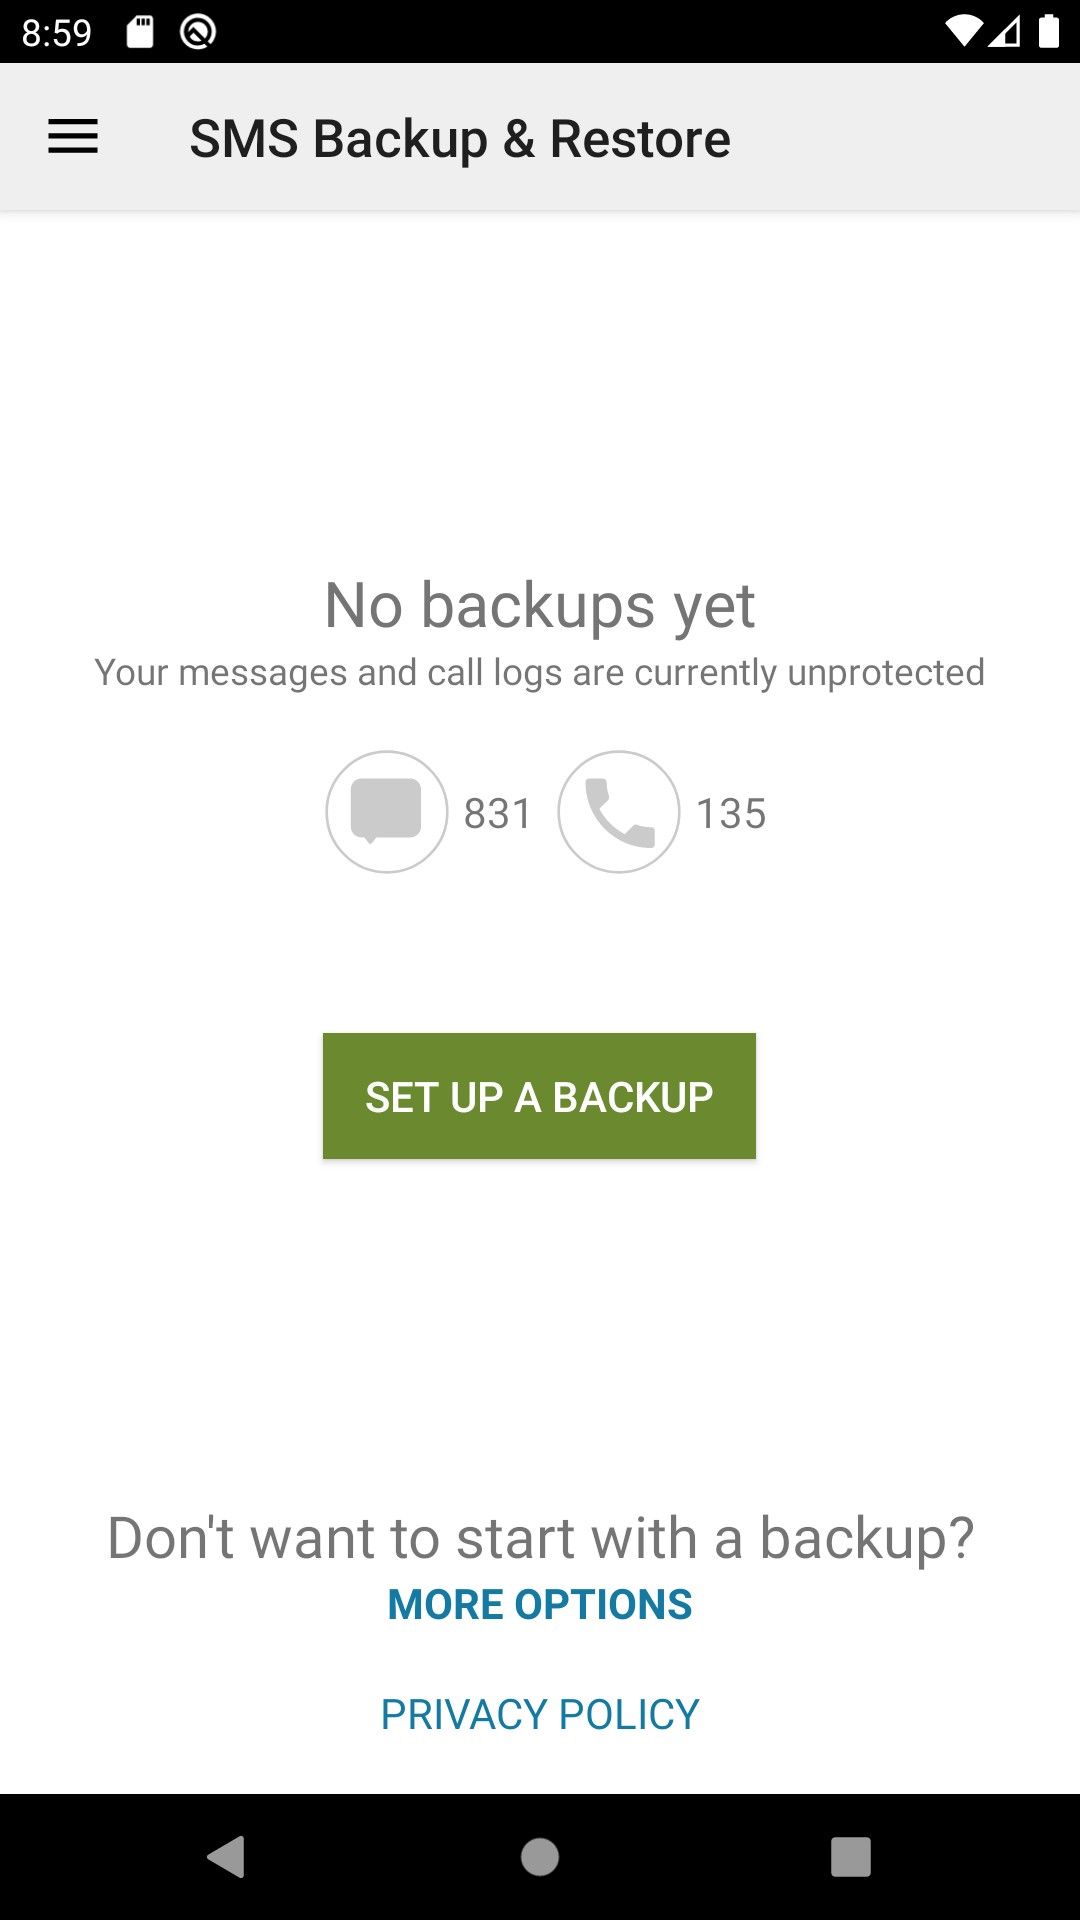 Set up a Backup option on SMS Backup & Restore.